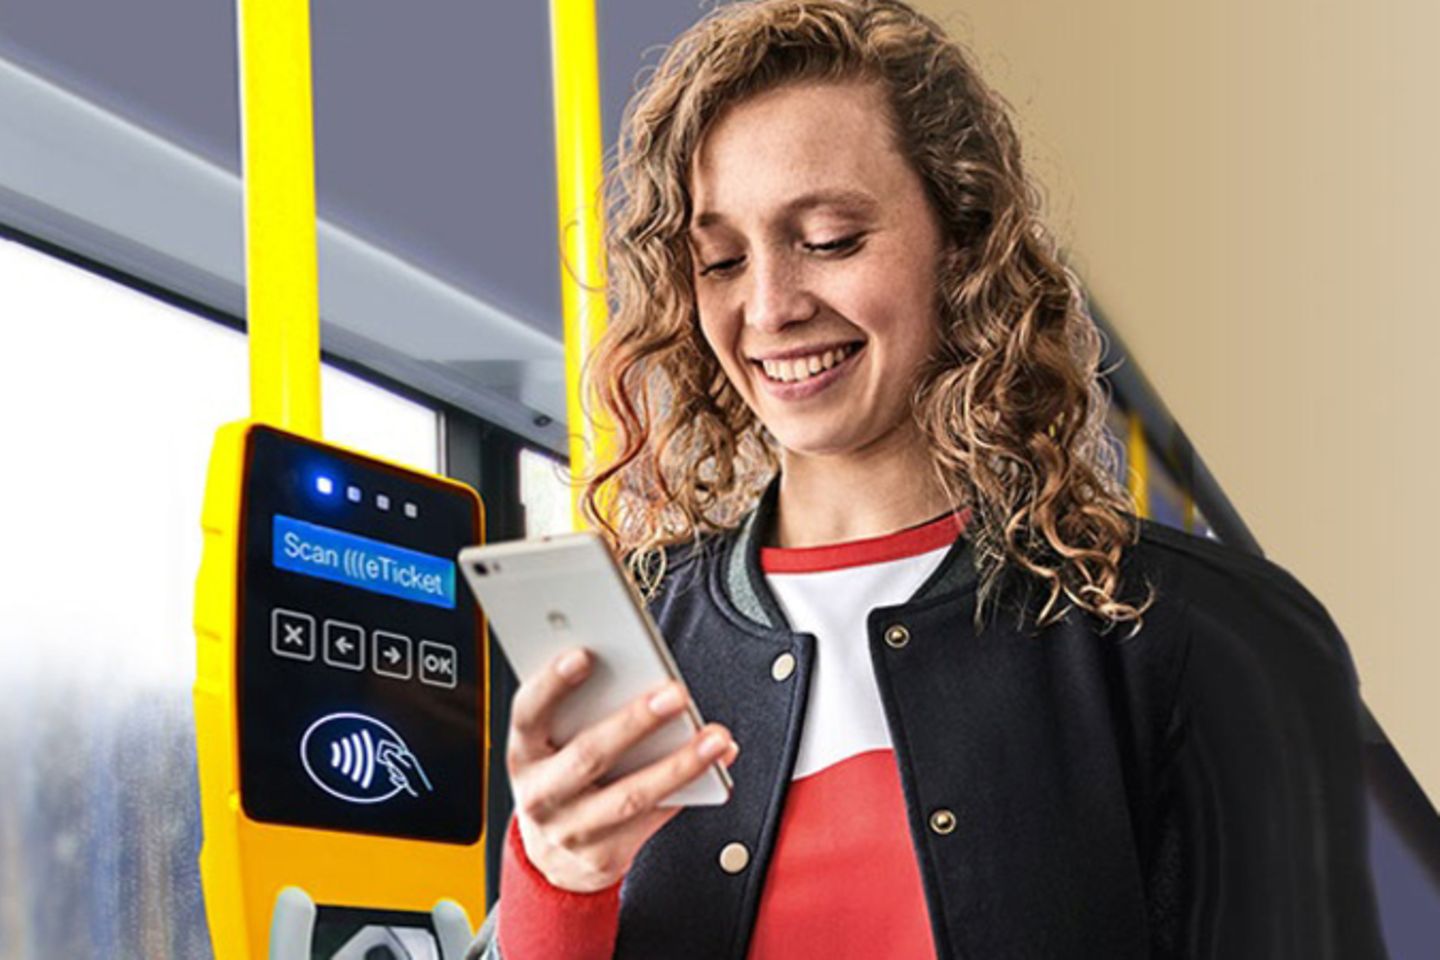 Mulher no ônibus, ao lado da máquina de bilhetes sem contato, olhando para o smartphone.